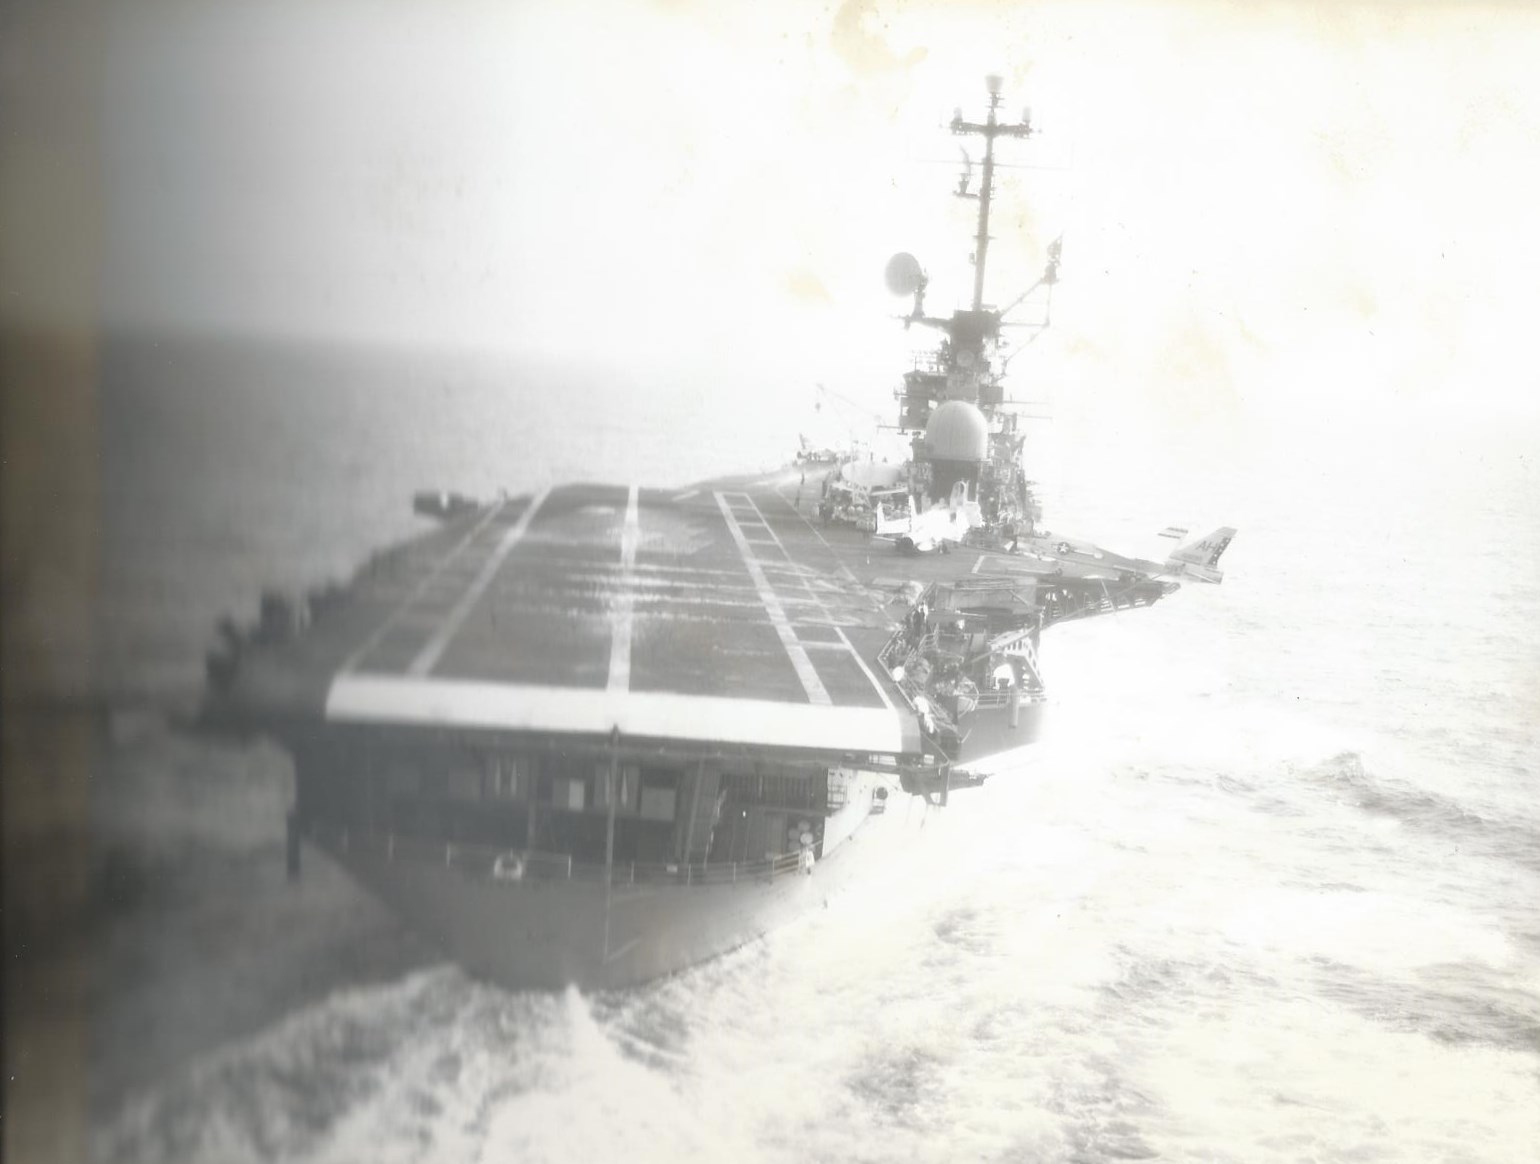  Final approach on the USS Oriskany.